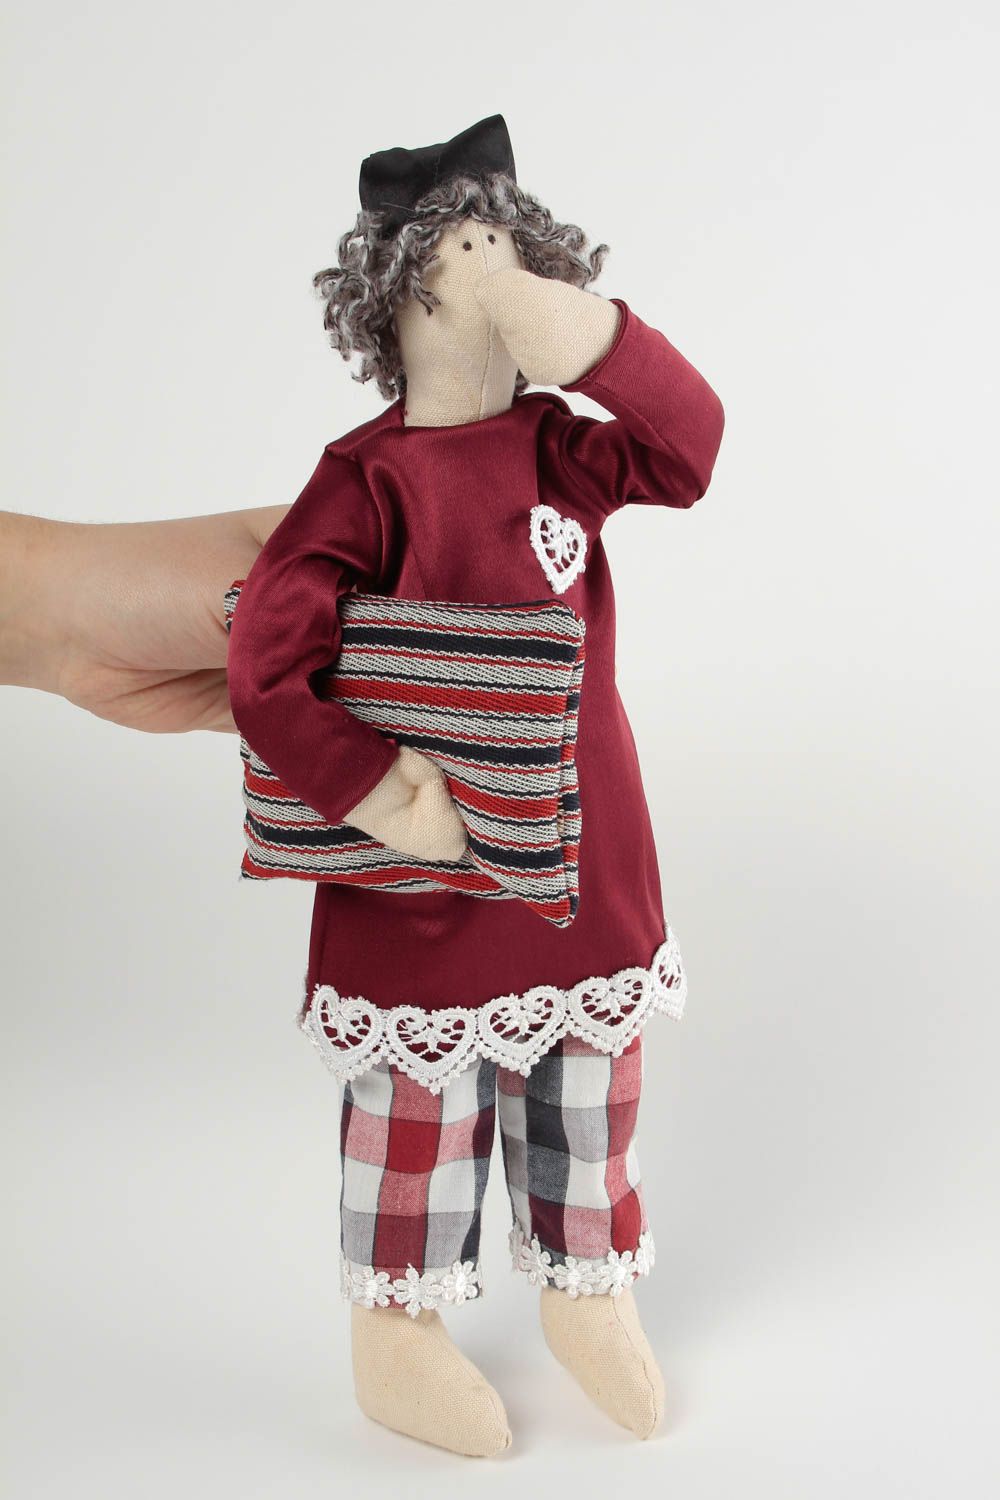 Puppe handgemacht Puppe aus Stoff Wohnung Deko Haus Deko ungewöhnlich stilvoll foto 1